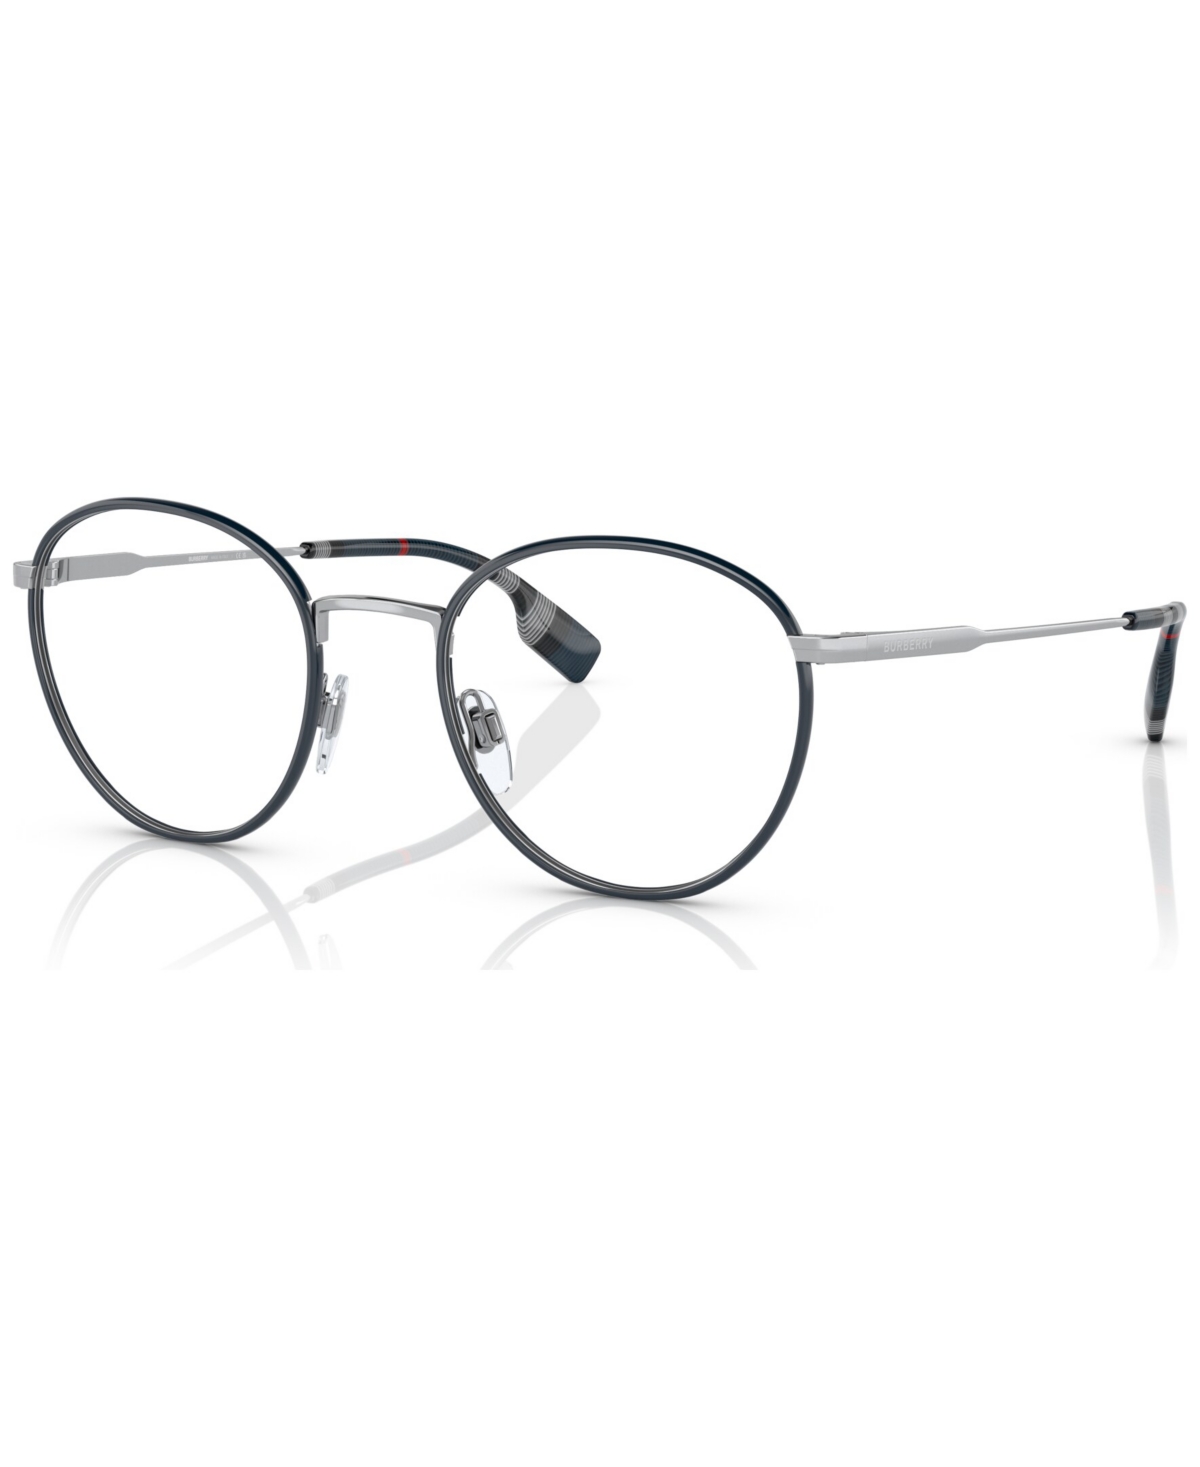 Men's Hugo Eyeglasses, BE1373 51 - Silver, Blue